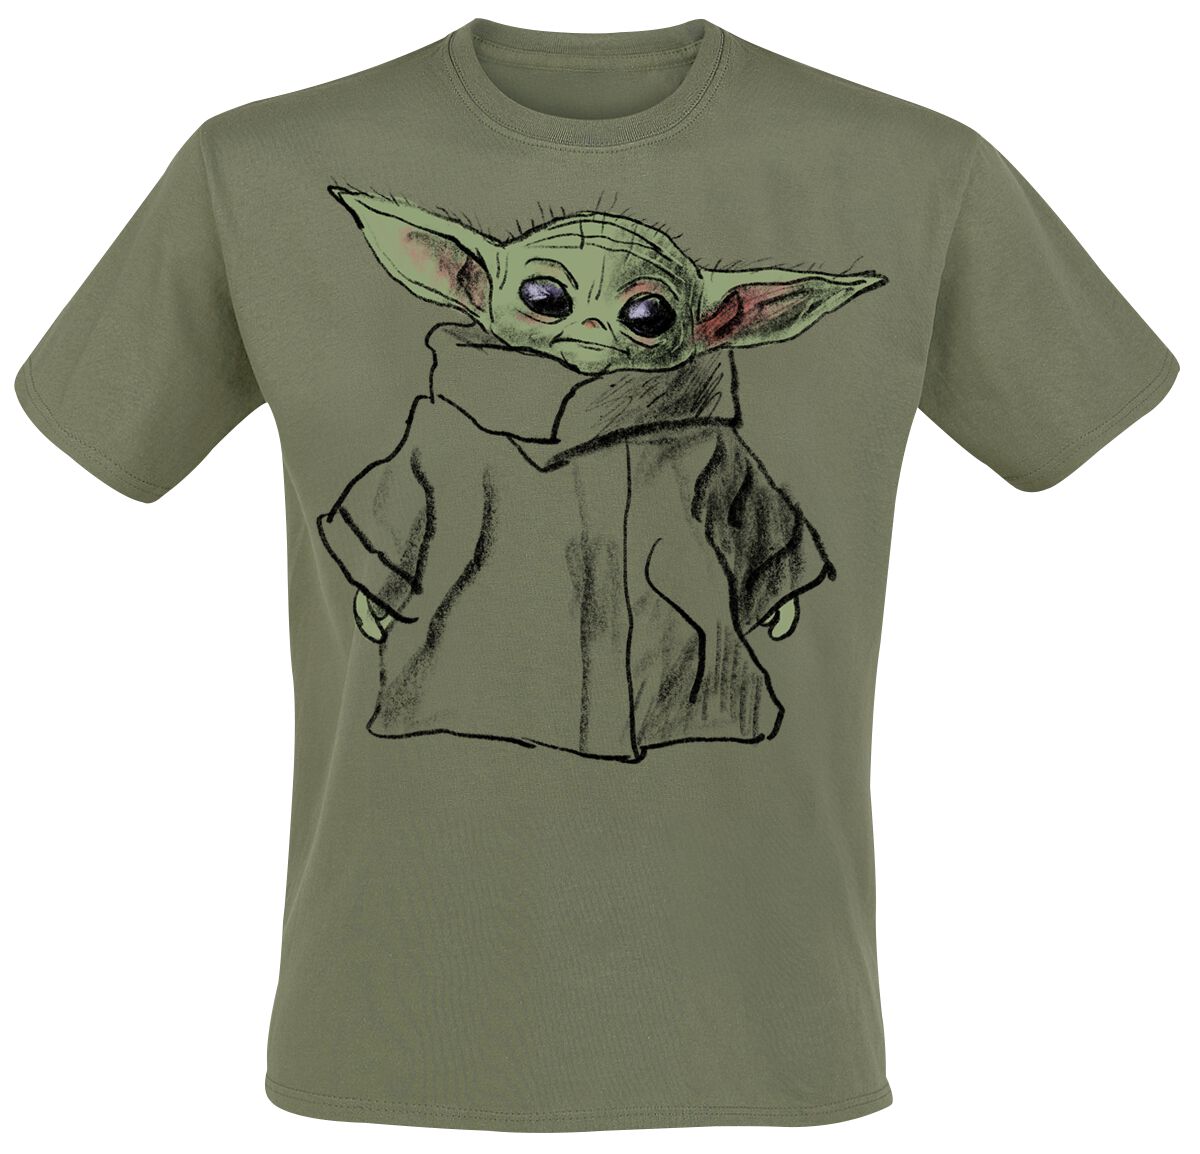 Star Wars T-Shirt - The Mandalorian - Grogu - Sketch - S bis XXL - für Männer - Größe L - grün  - EMP exklusives Merchandise!